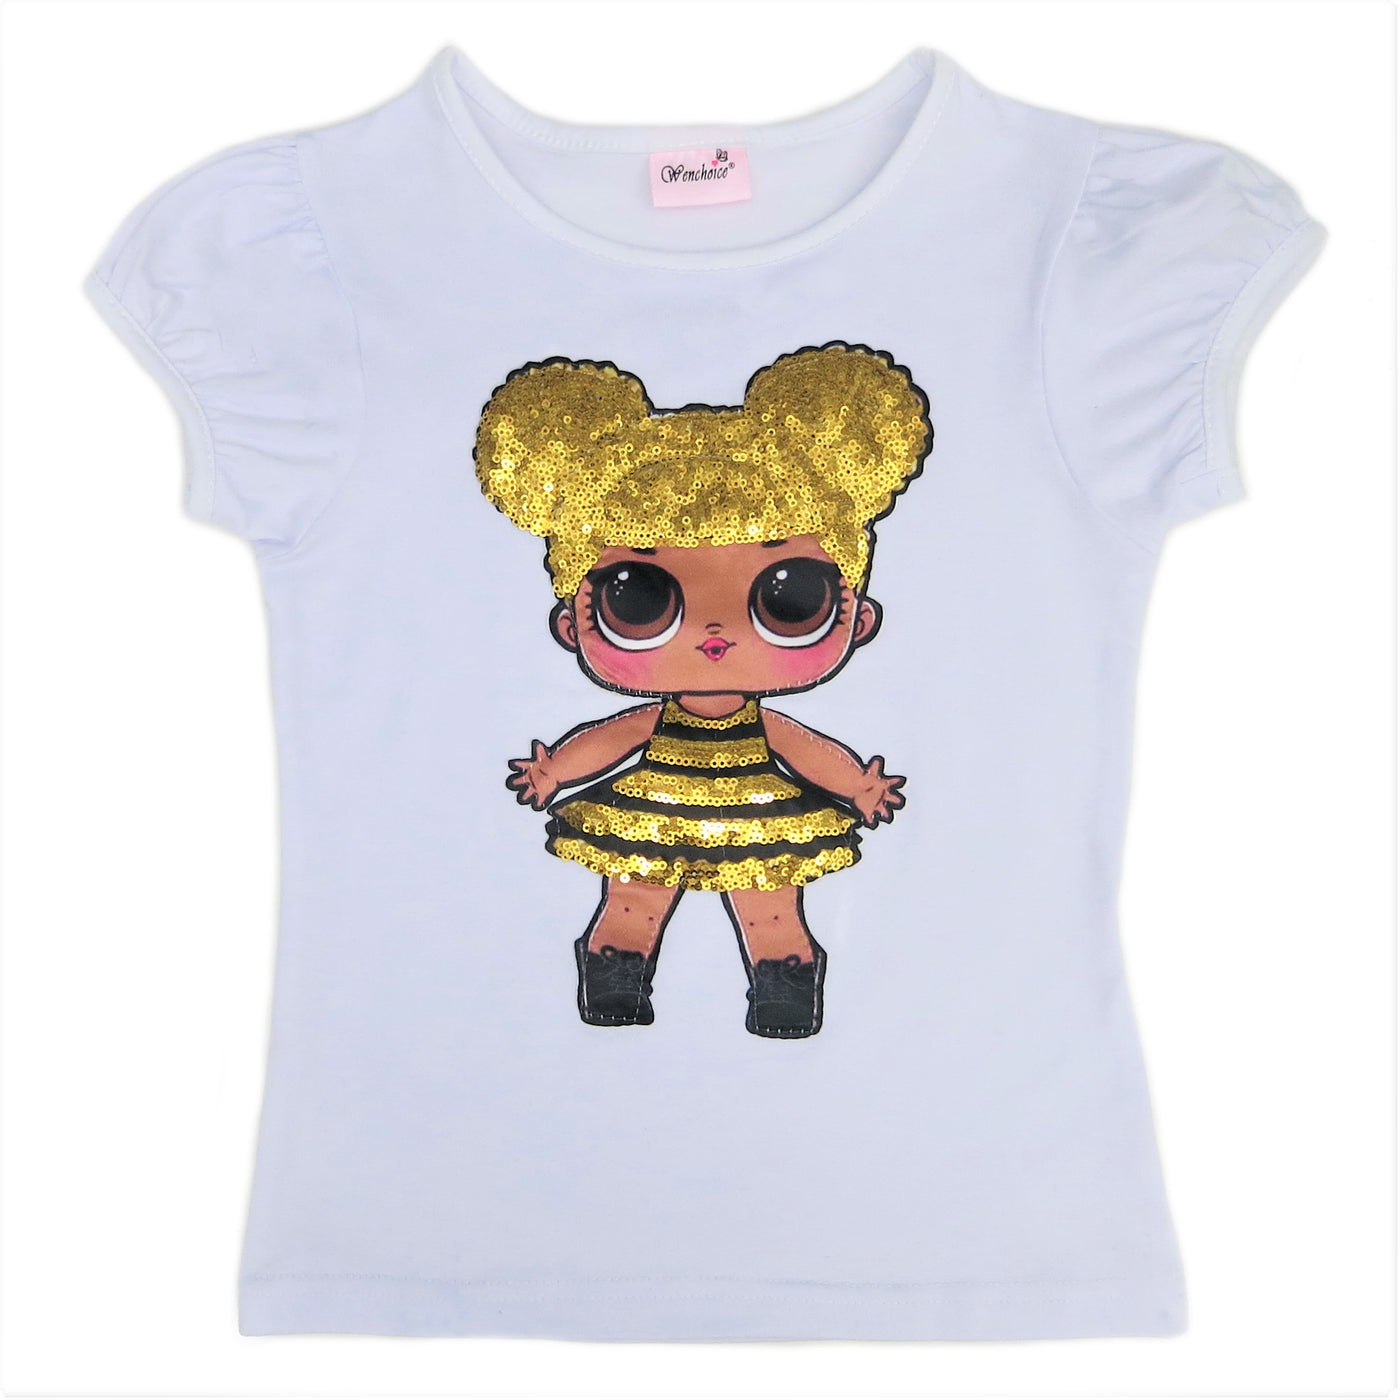 lol queen bee shirt